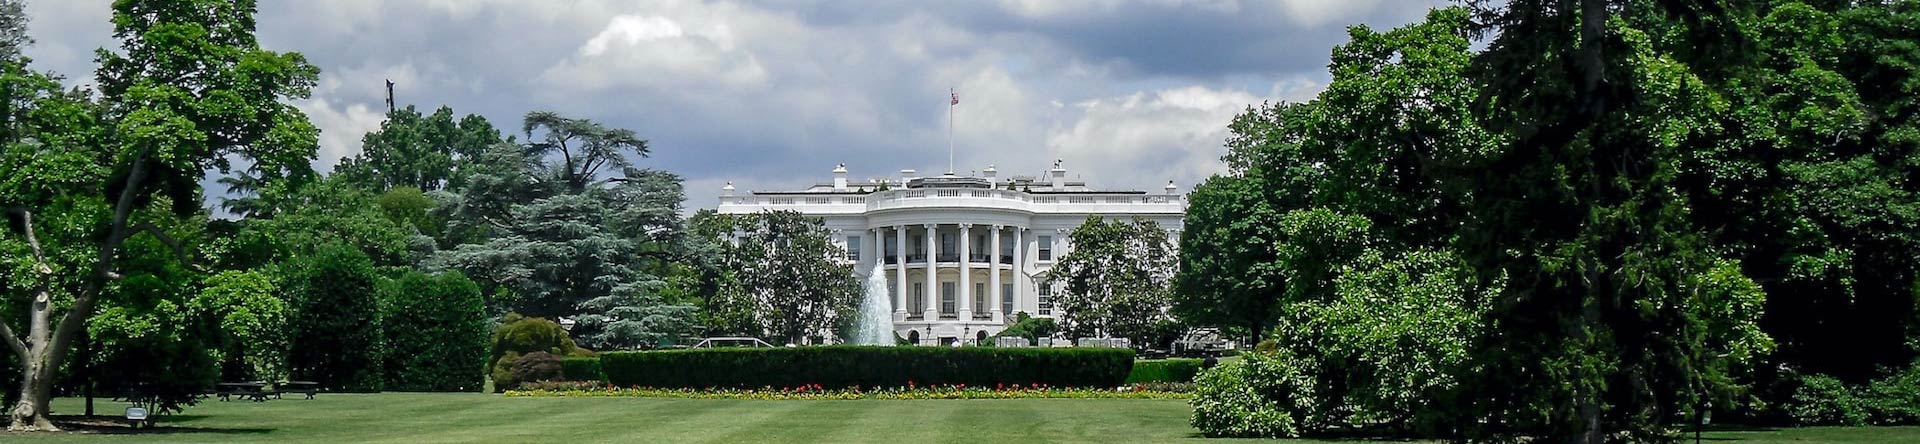 Das Weiße Haus Washington D.C.